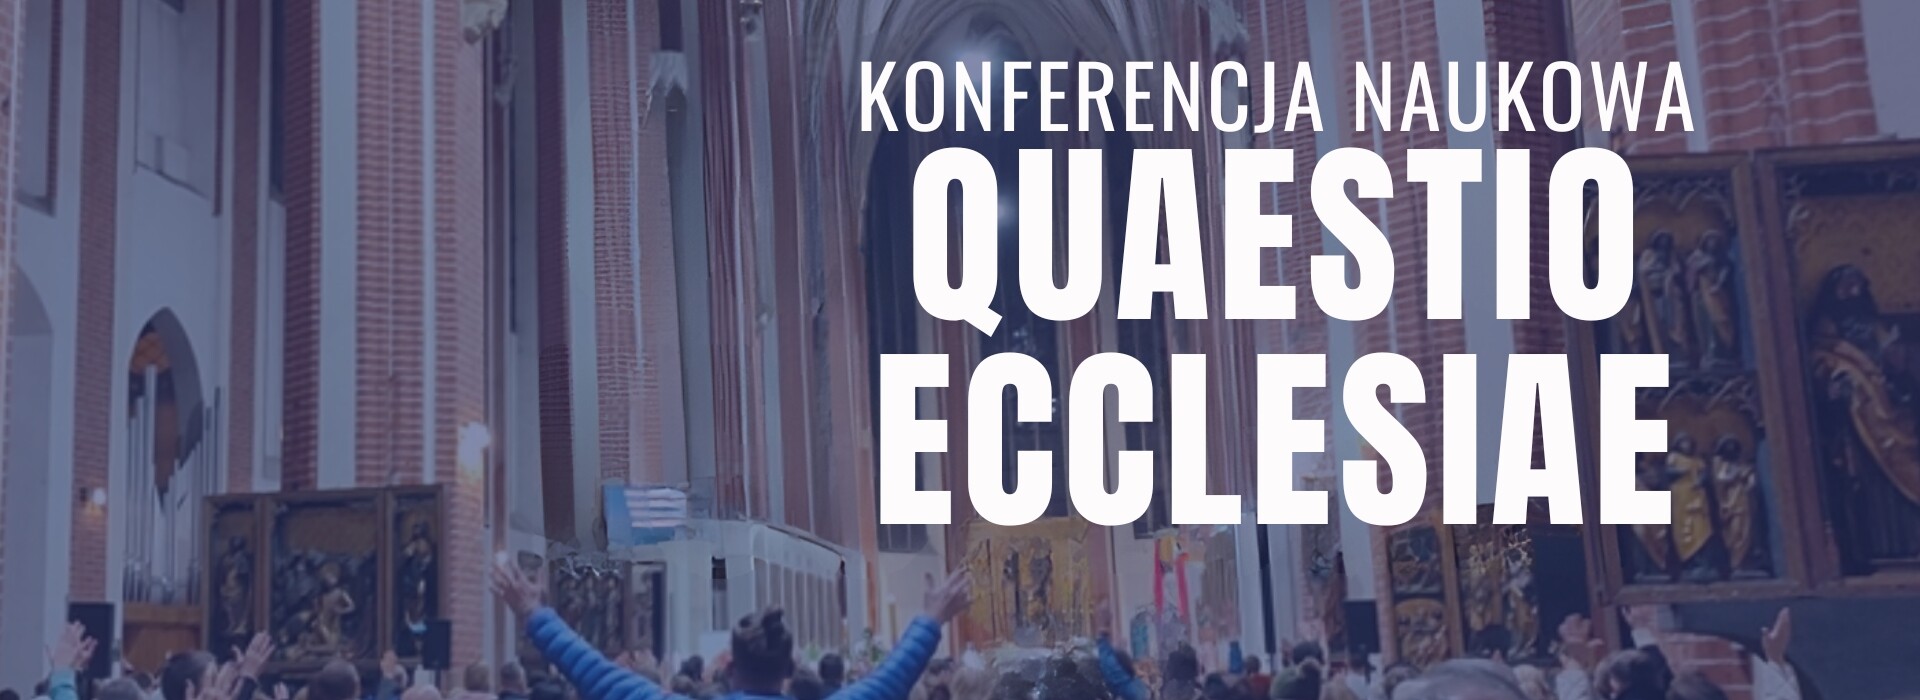 Zaproszenie na konferencję Quaestio  Ecclesiae cz. 2